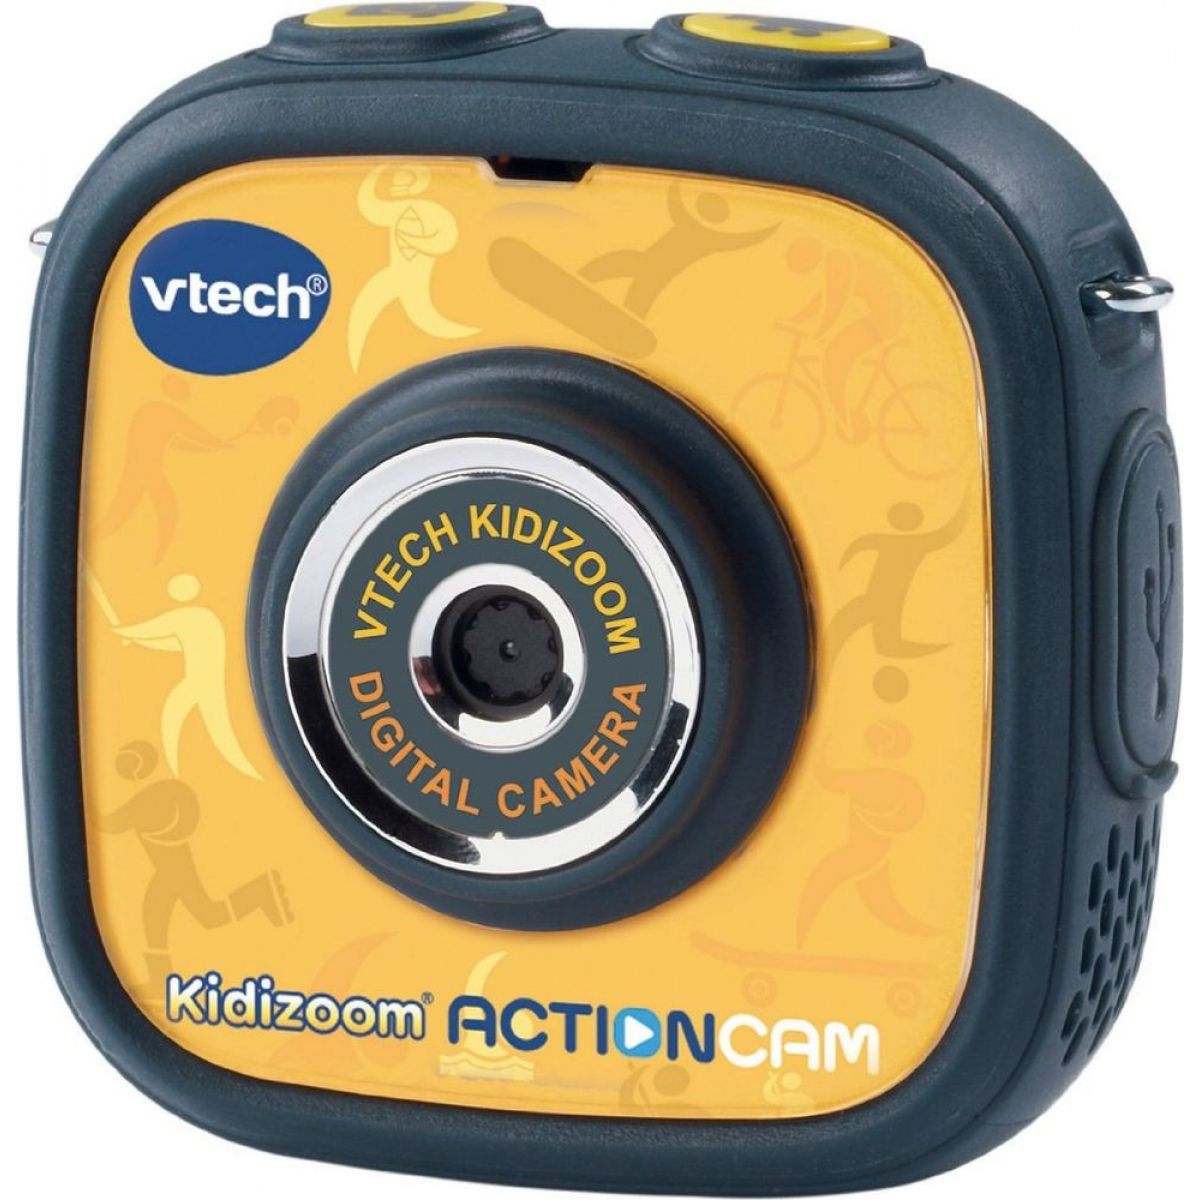 Vtech Kidizoom Action Cam - II. jakost